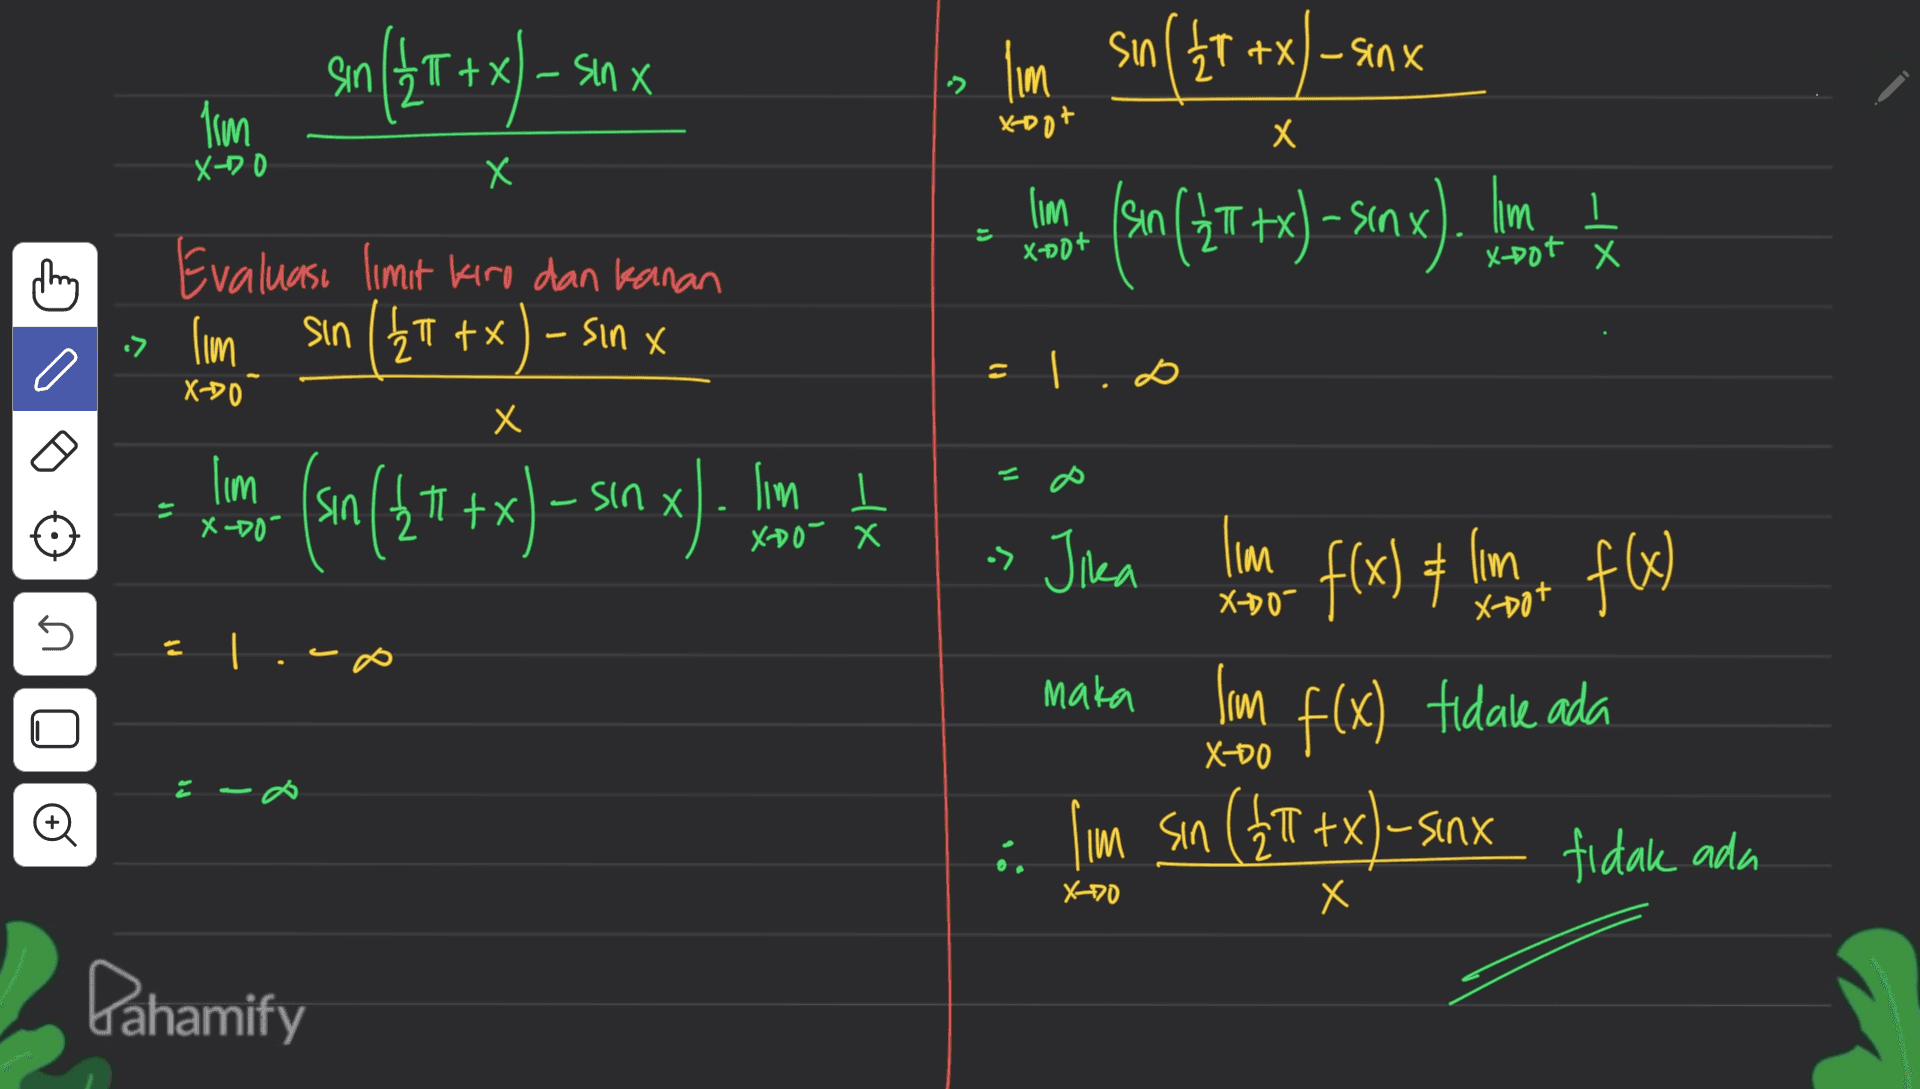 sin(2t +xl-5 sin X Х lim sin ( 2T +x - sinx ( ) lim Xoot x X-DO X х lim Isin lim 3) 1 x-Dot X n(2T+x) - s«nx) Xnot -- Evaluasi limit kiro dan kanan > lim sin ( 2T +x) - sinx li | X-20 X Х lim - 8 lim l (sn (22 + x) - sin x) IP X-DO- sin x). lom XD0 X -> Jika lim X-DO- 5 O f(x) + lomban fx) f(x) tidale ada maka lim XD0 lim sin (4T tx) - sinx tidak ad e X00 X Х Dahamify 